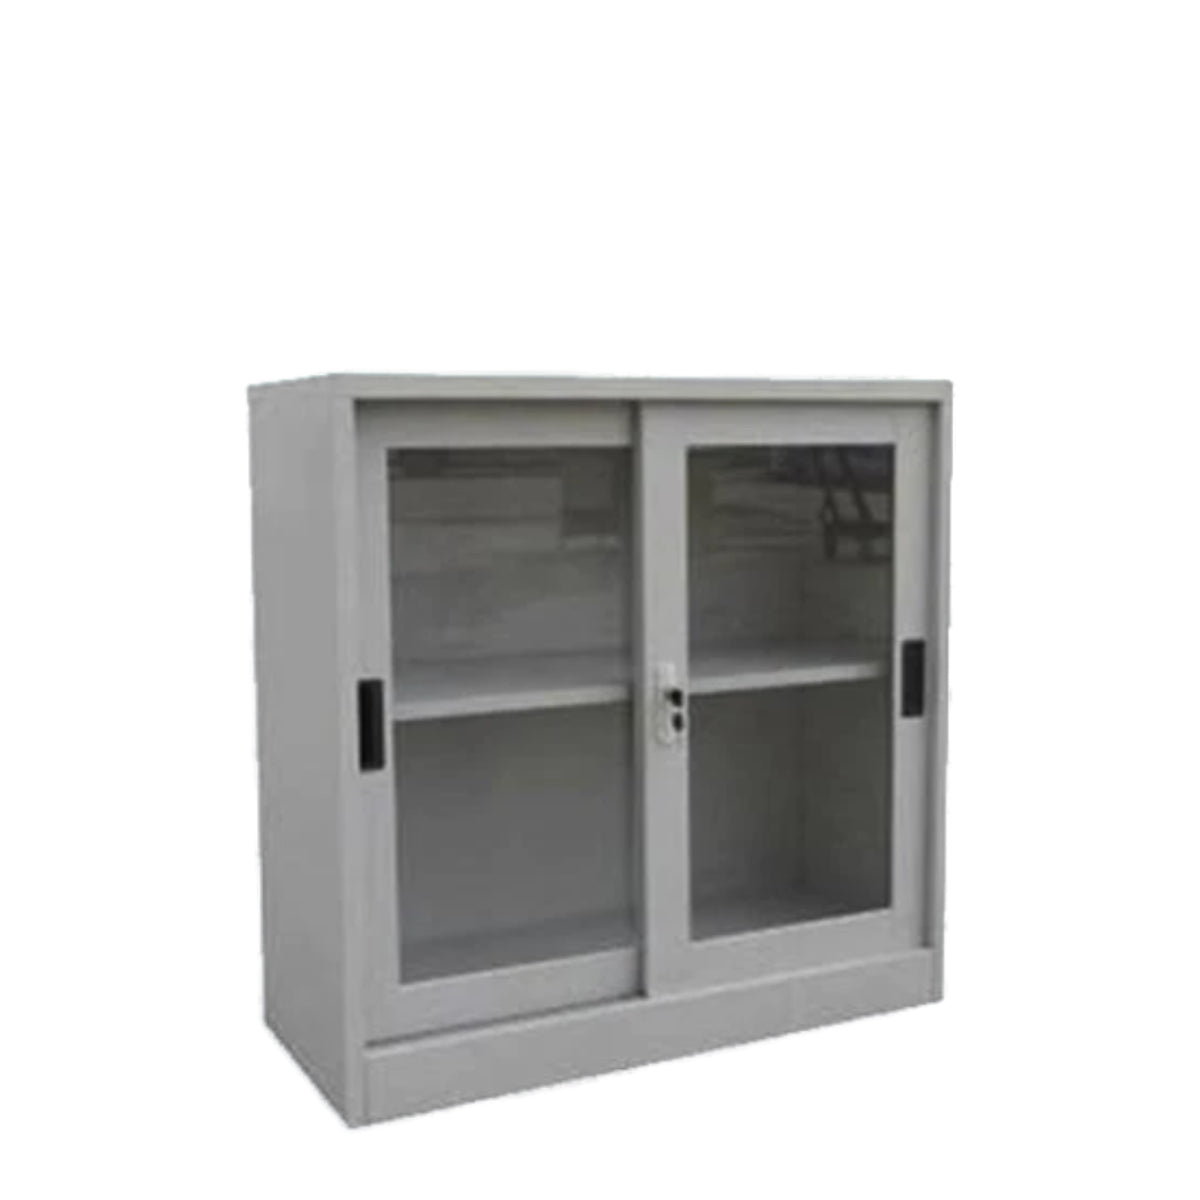 Rexel Filing Cupboard, 94x90.1x44.5 cm, Sliding Glass Door, Grey